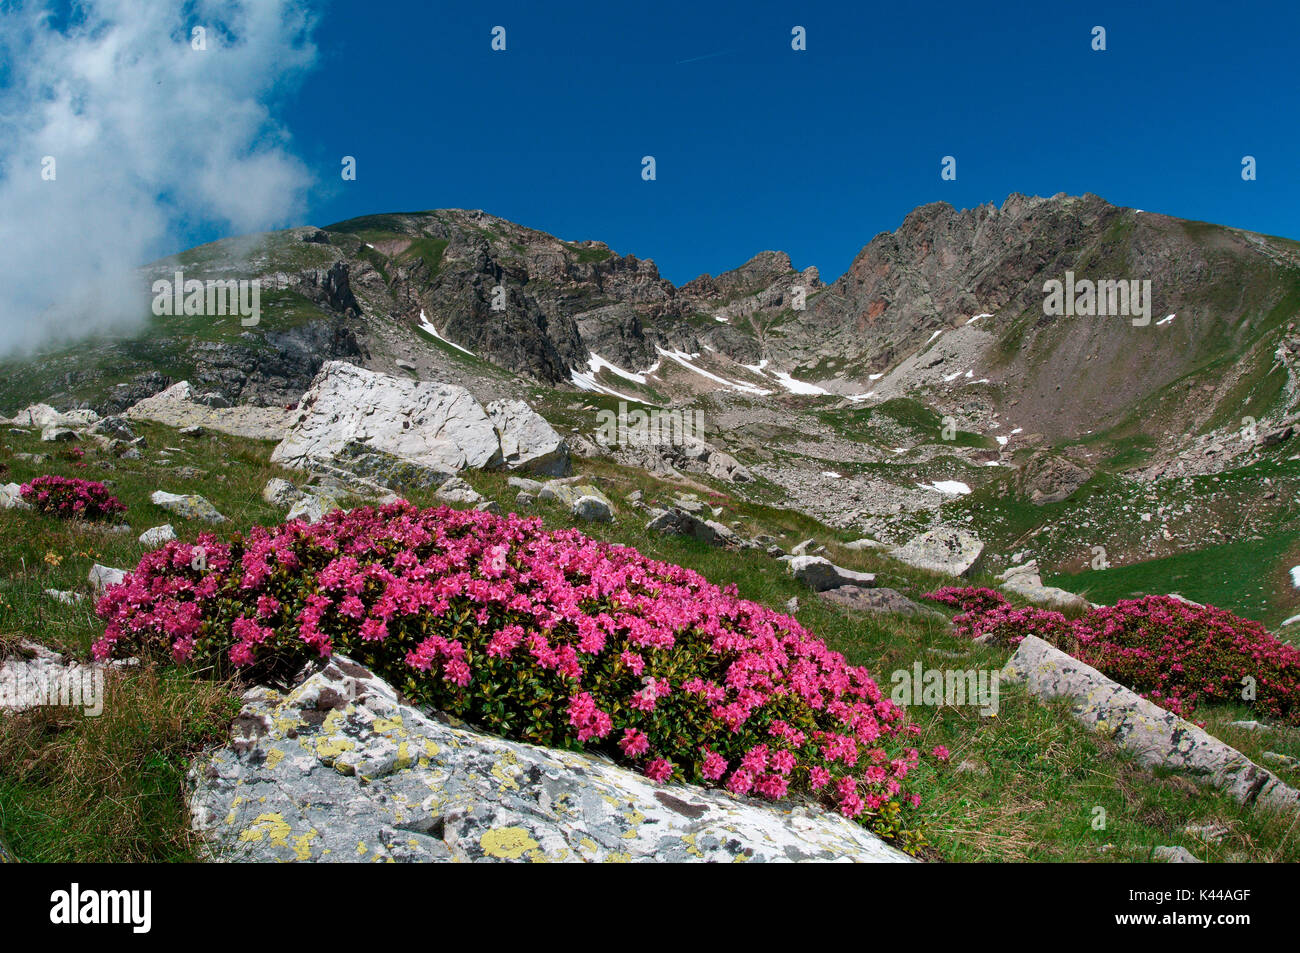 Fleur alpine, un Rhododendron dans la floraison. Alpes Ligures, Italie, Europe Banque D'Images